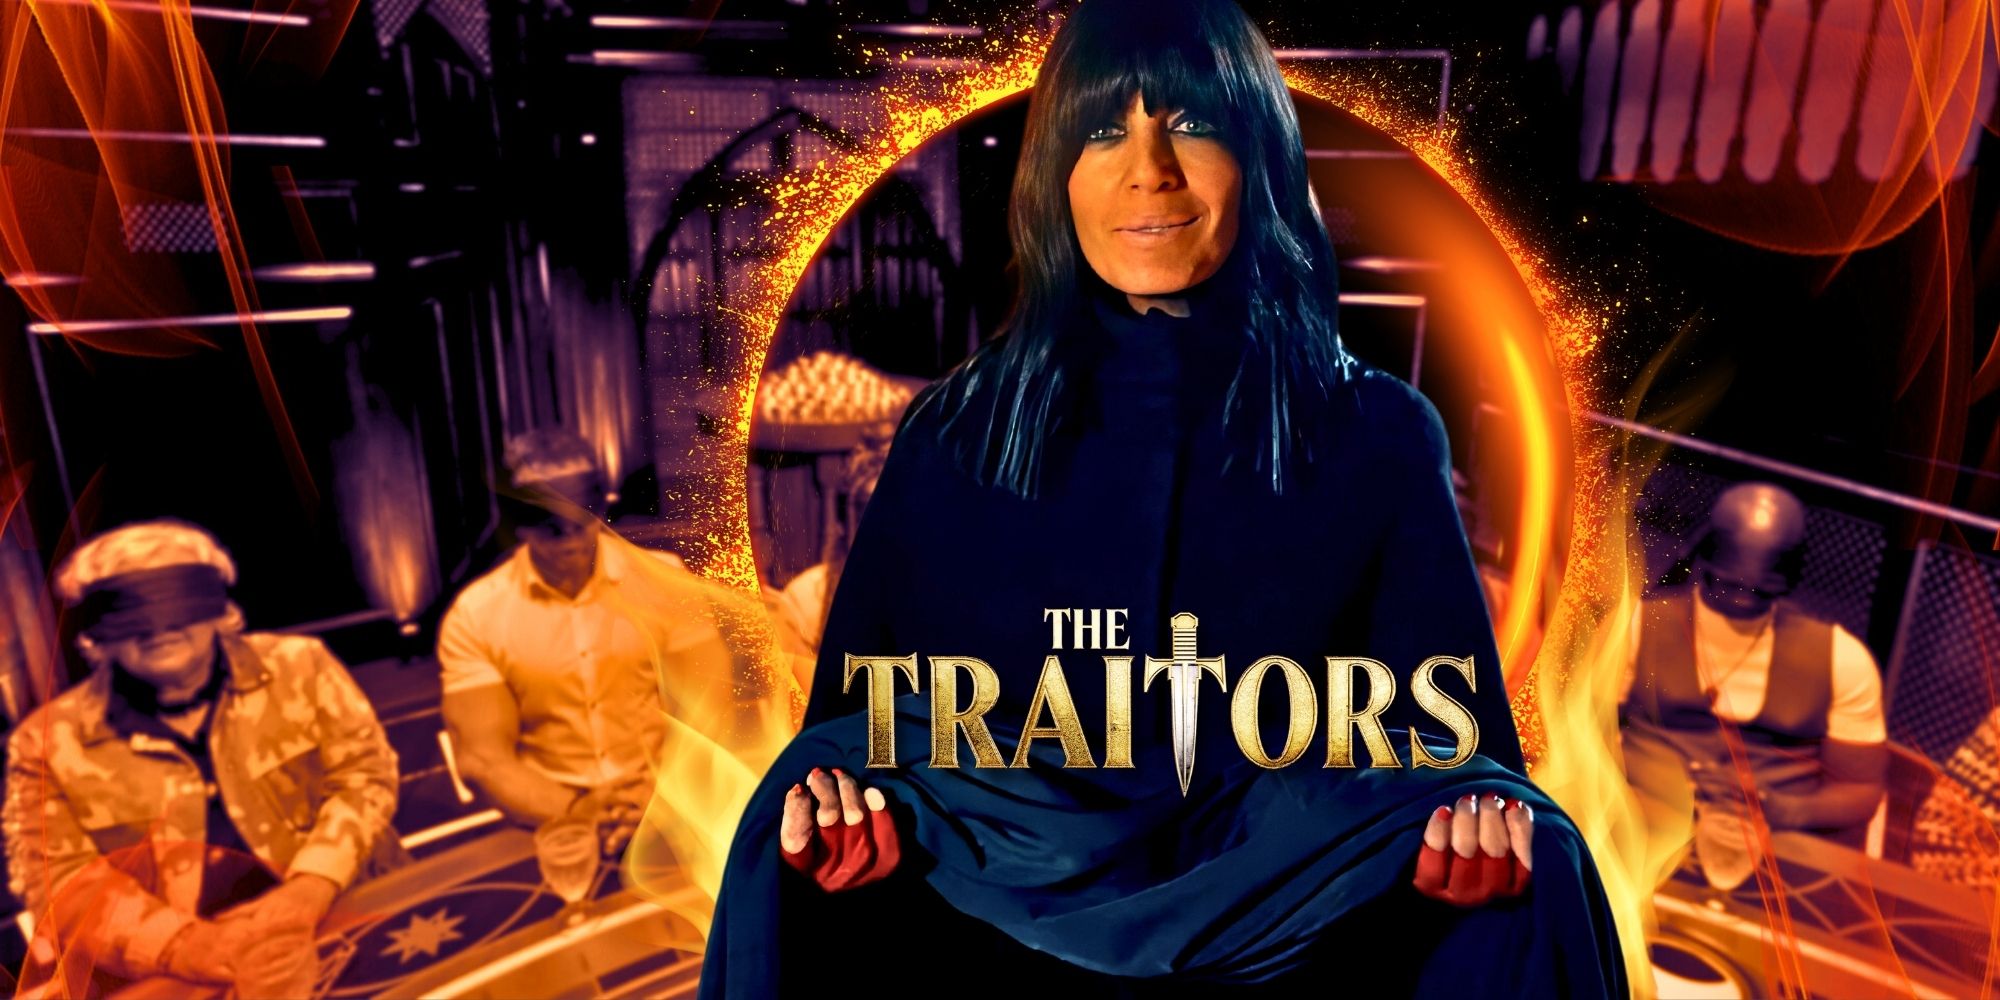 La estrella de la temporada 1 de The Traitors UK, John McManus, se declara culpable después de atacar a una mujer